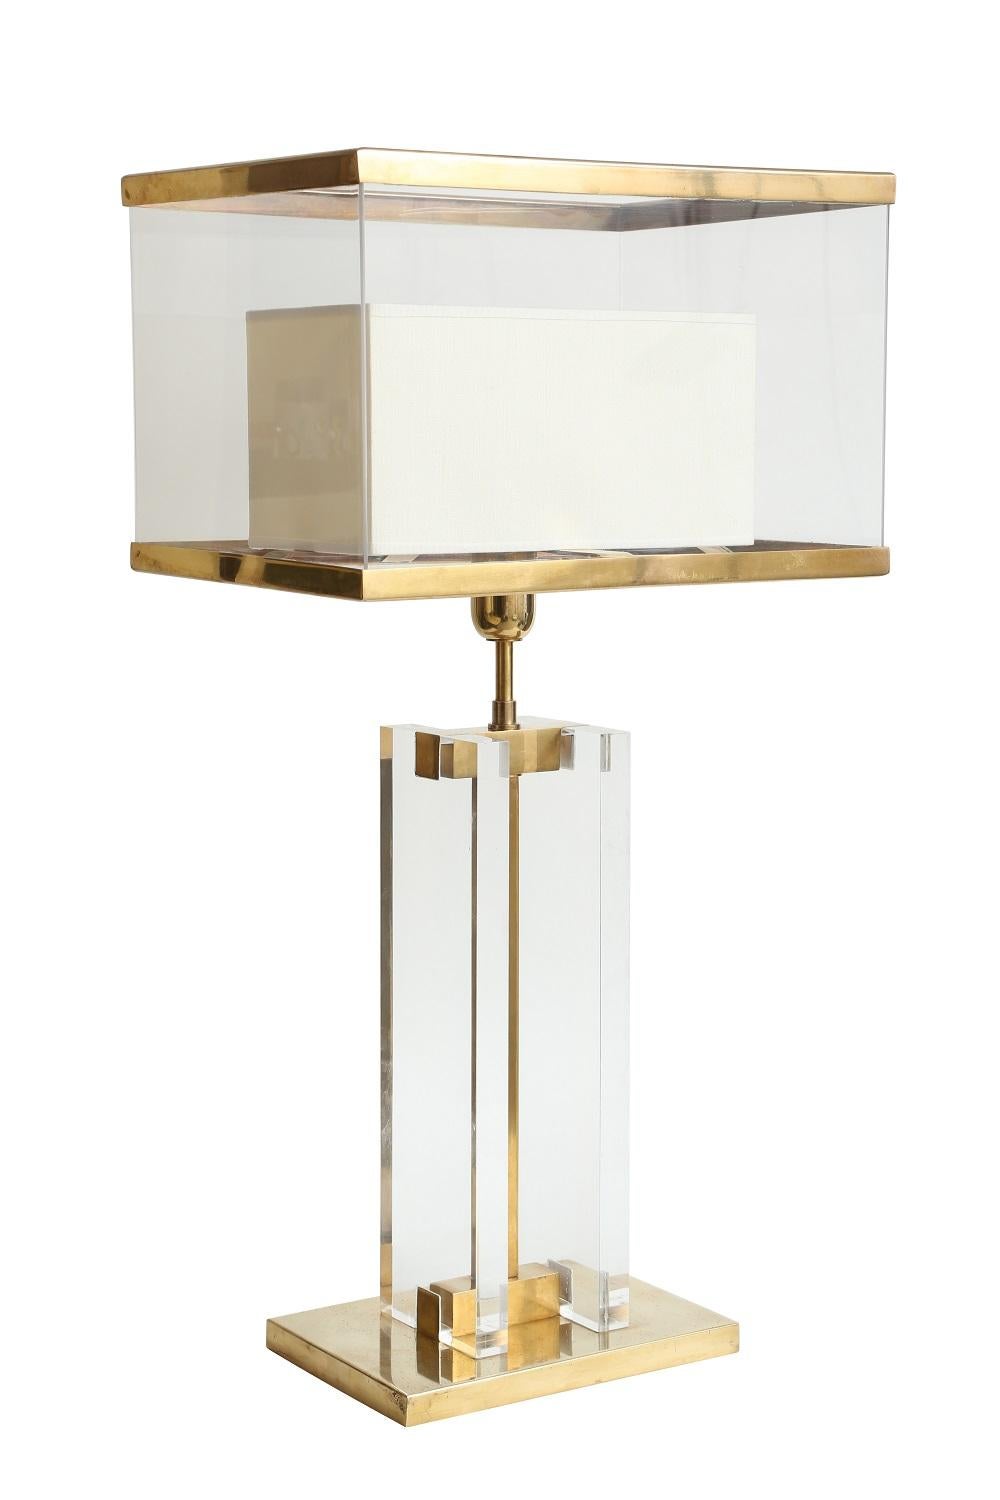 Italian Binario Table Lamp by Selezioni Domus For Sale